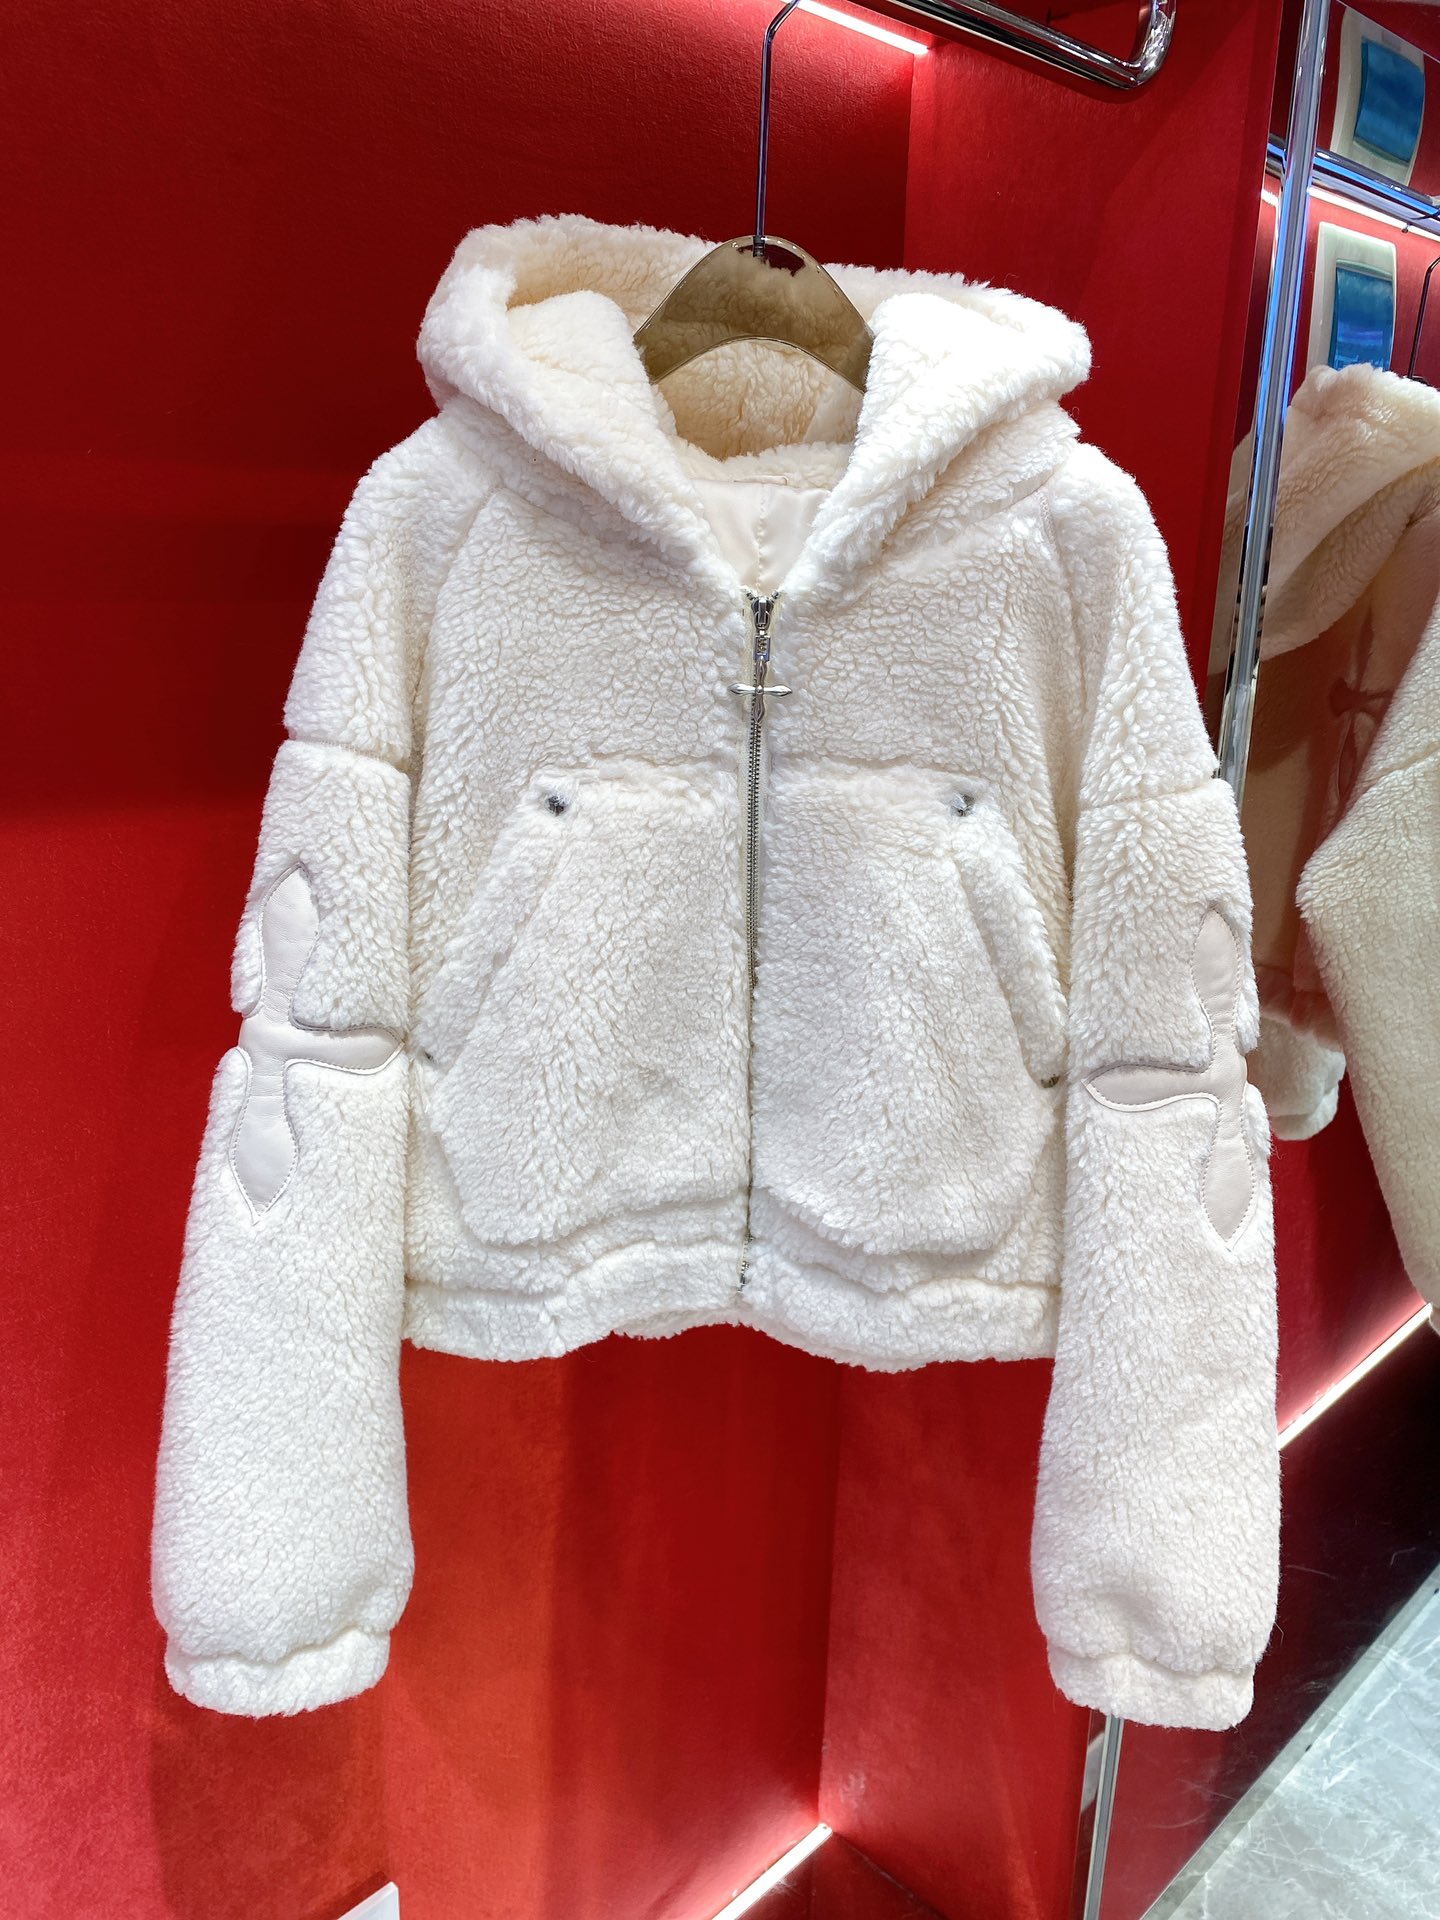 SMFKジャケットモコモコスーパーコピー 秋冬服 暖かい 人気品 柔らかい レディース もこもこ 高級 ホワイト_1